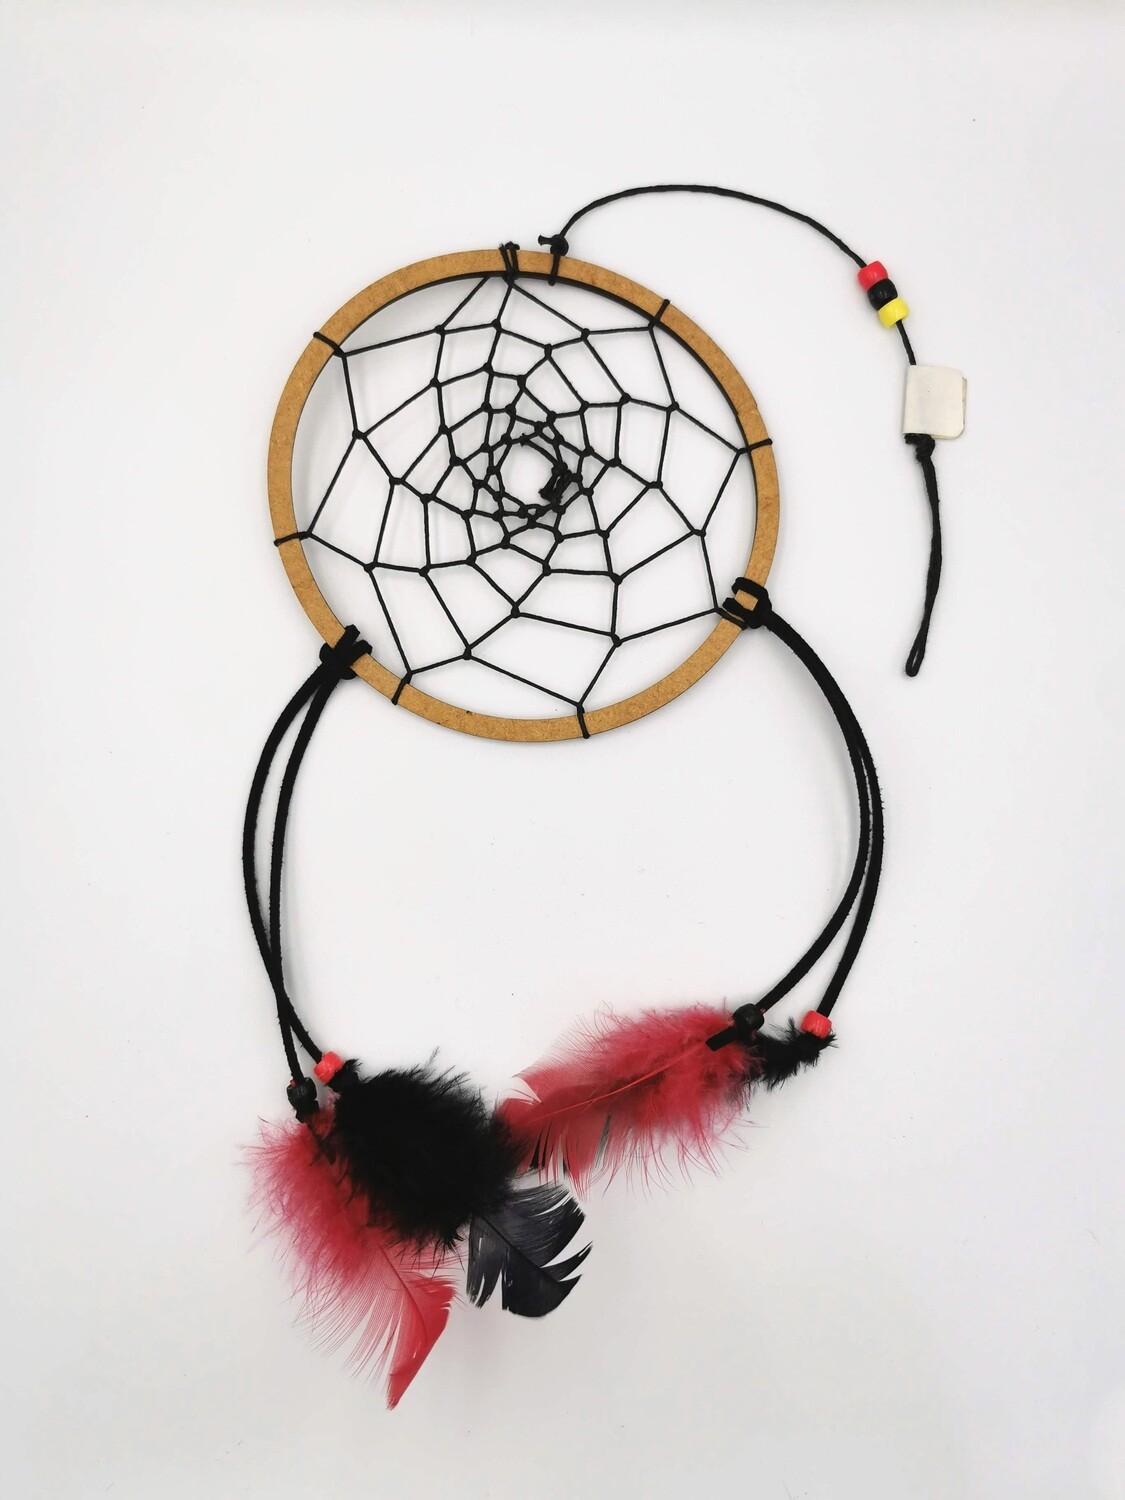 Medium (11.5cm) Thin String Dreamcatcher